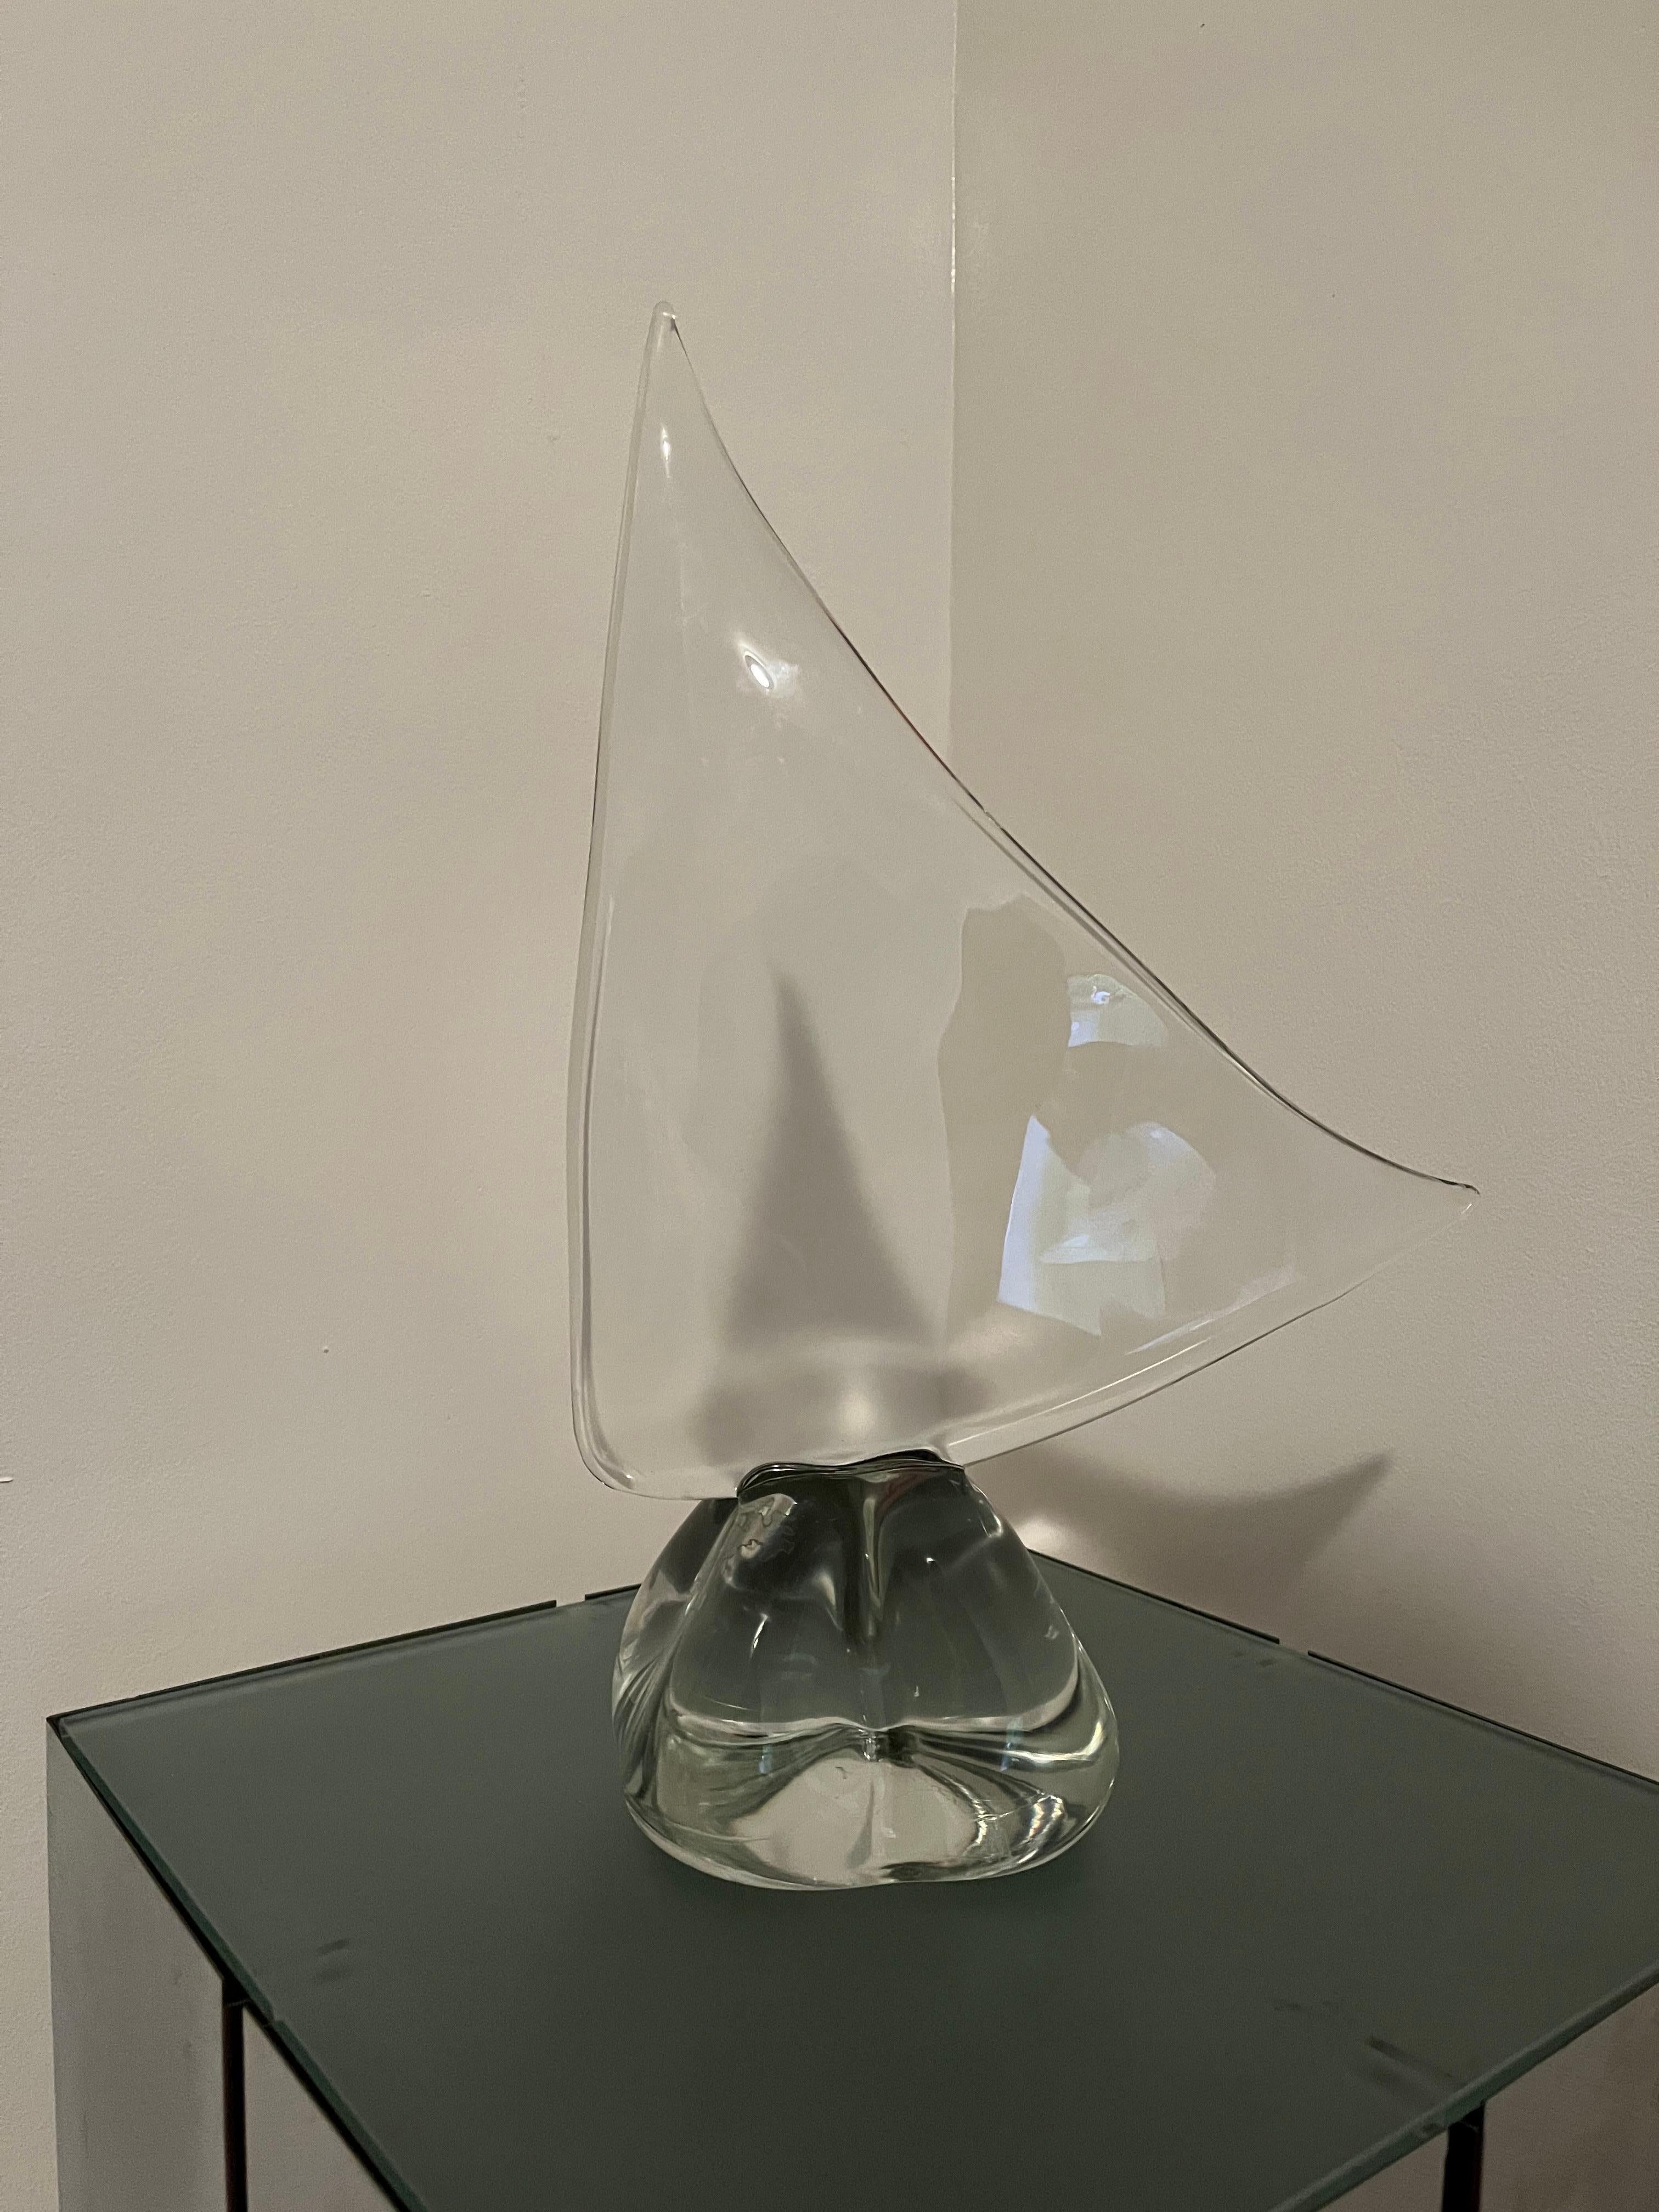 Grande sculpture de voilier en cristal à la manière de Daum, France, vers les années 1970. Signature gravée sur le fond. Excellent état. Pas d'éclats ni de rayures.